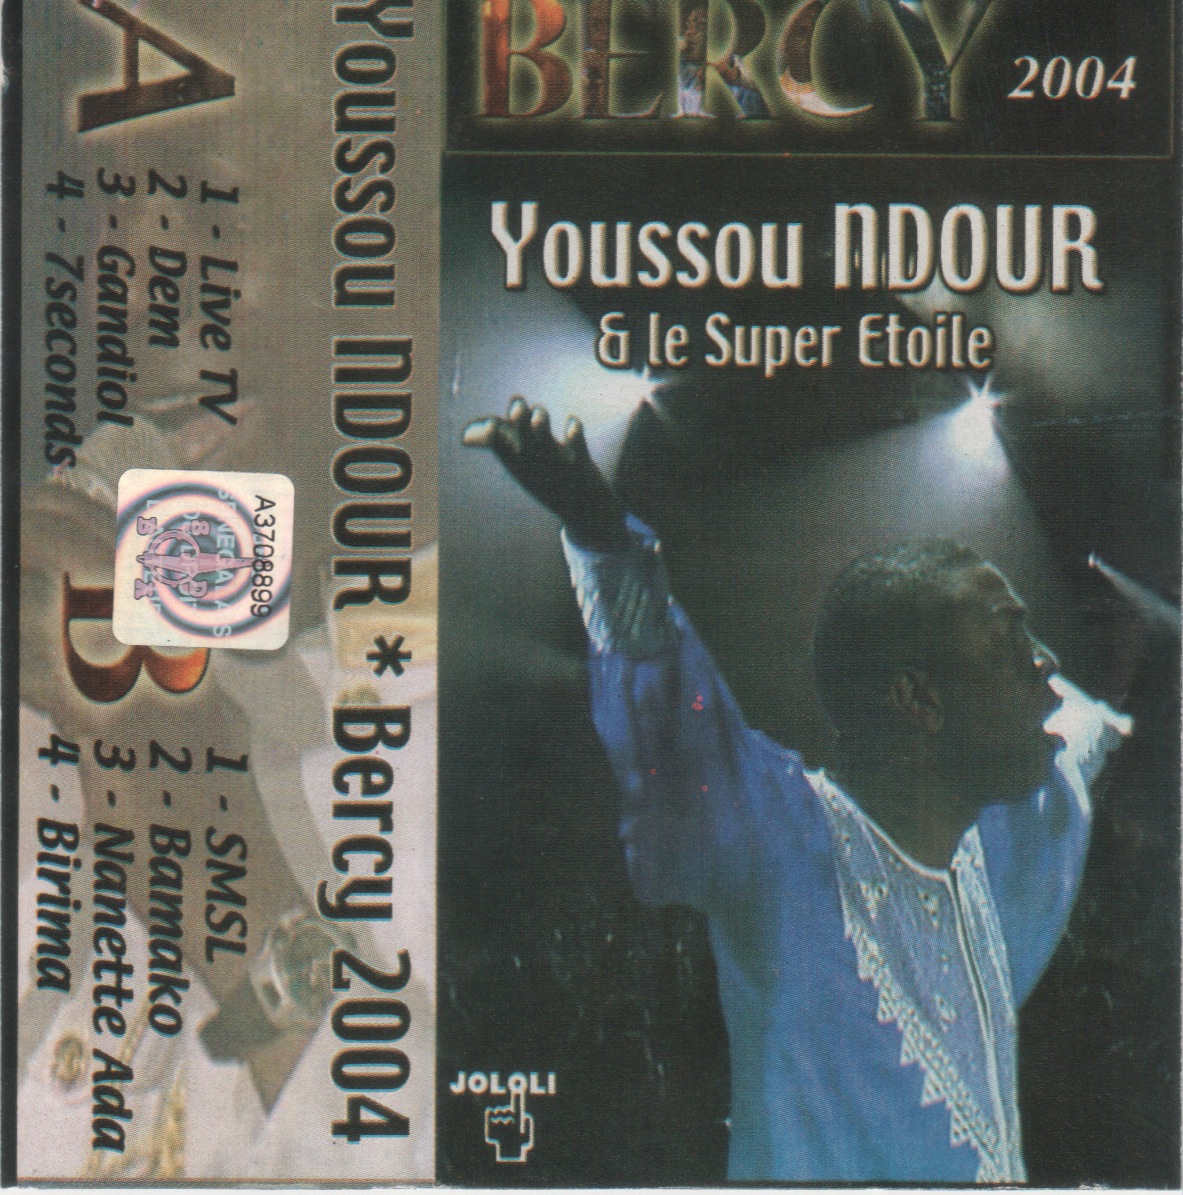 Youssou Ndour & Le Super Etoile : Bercy (2004) Cover+1